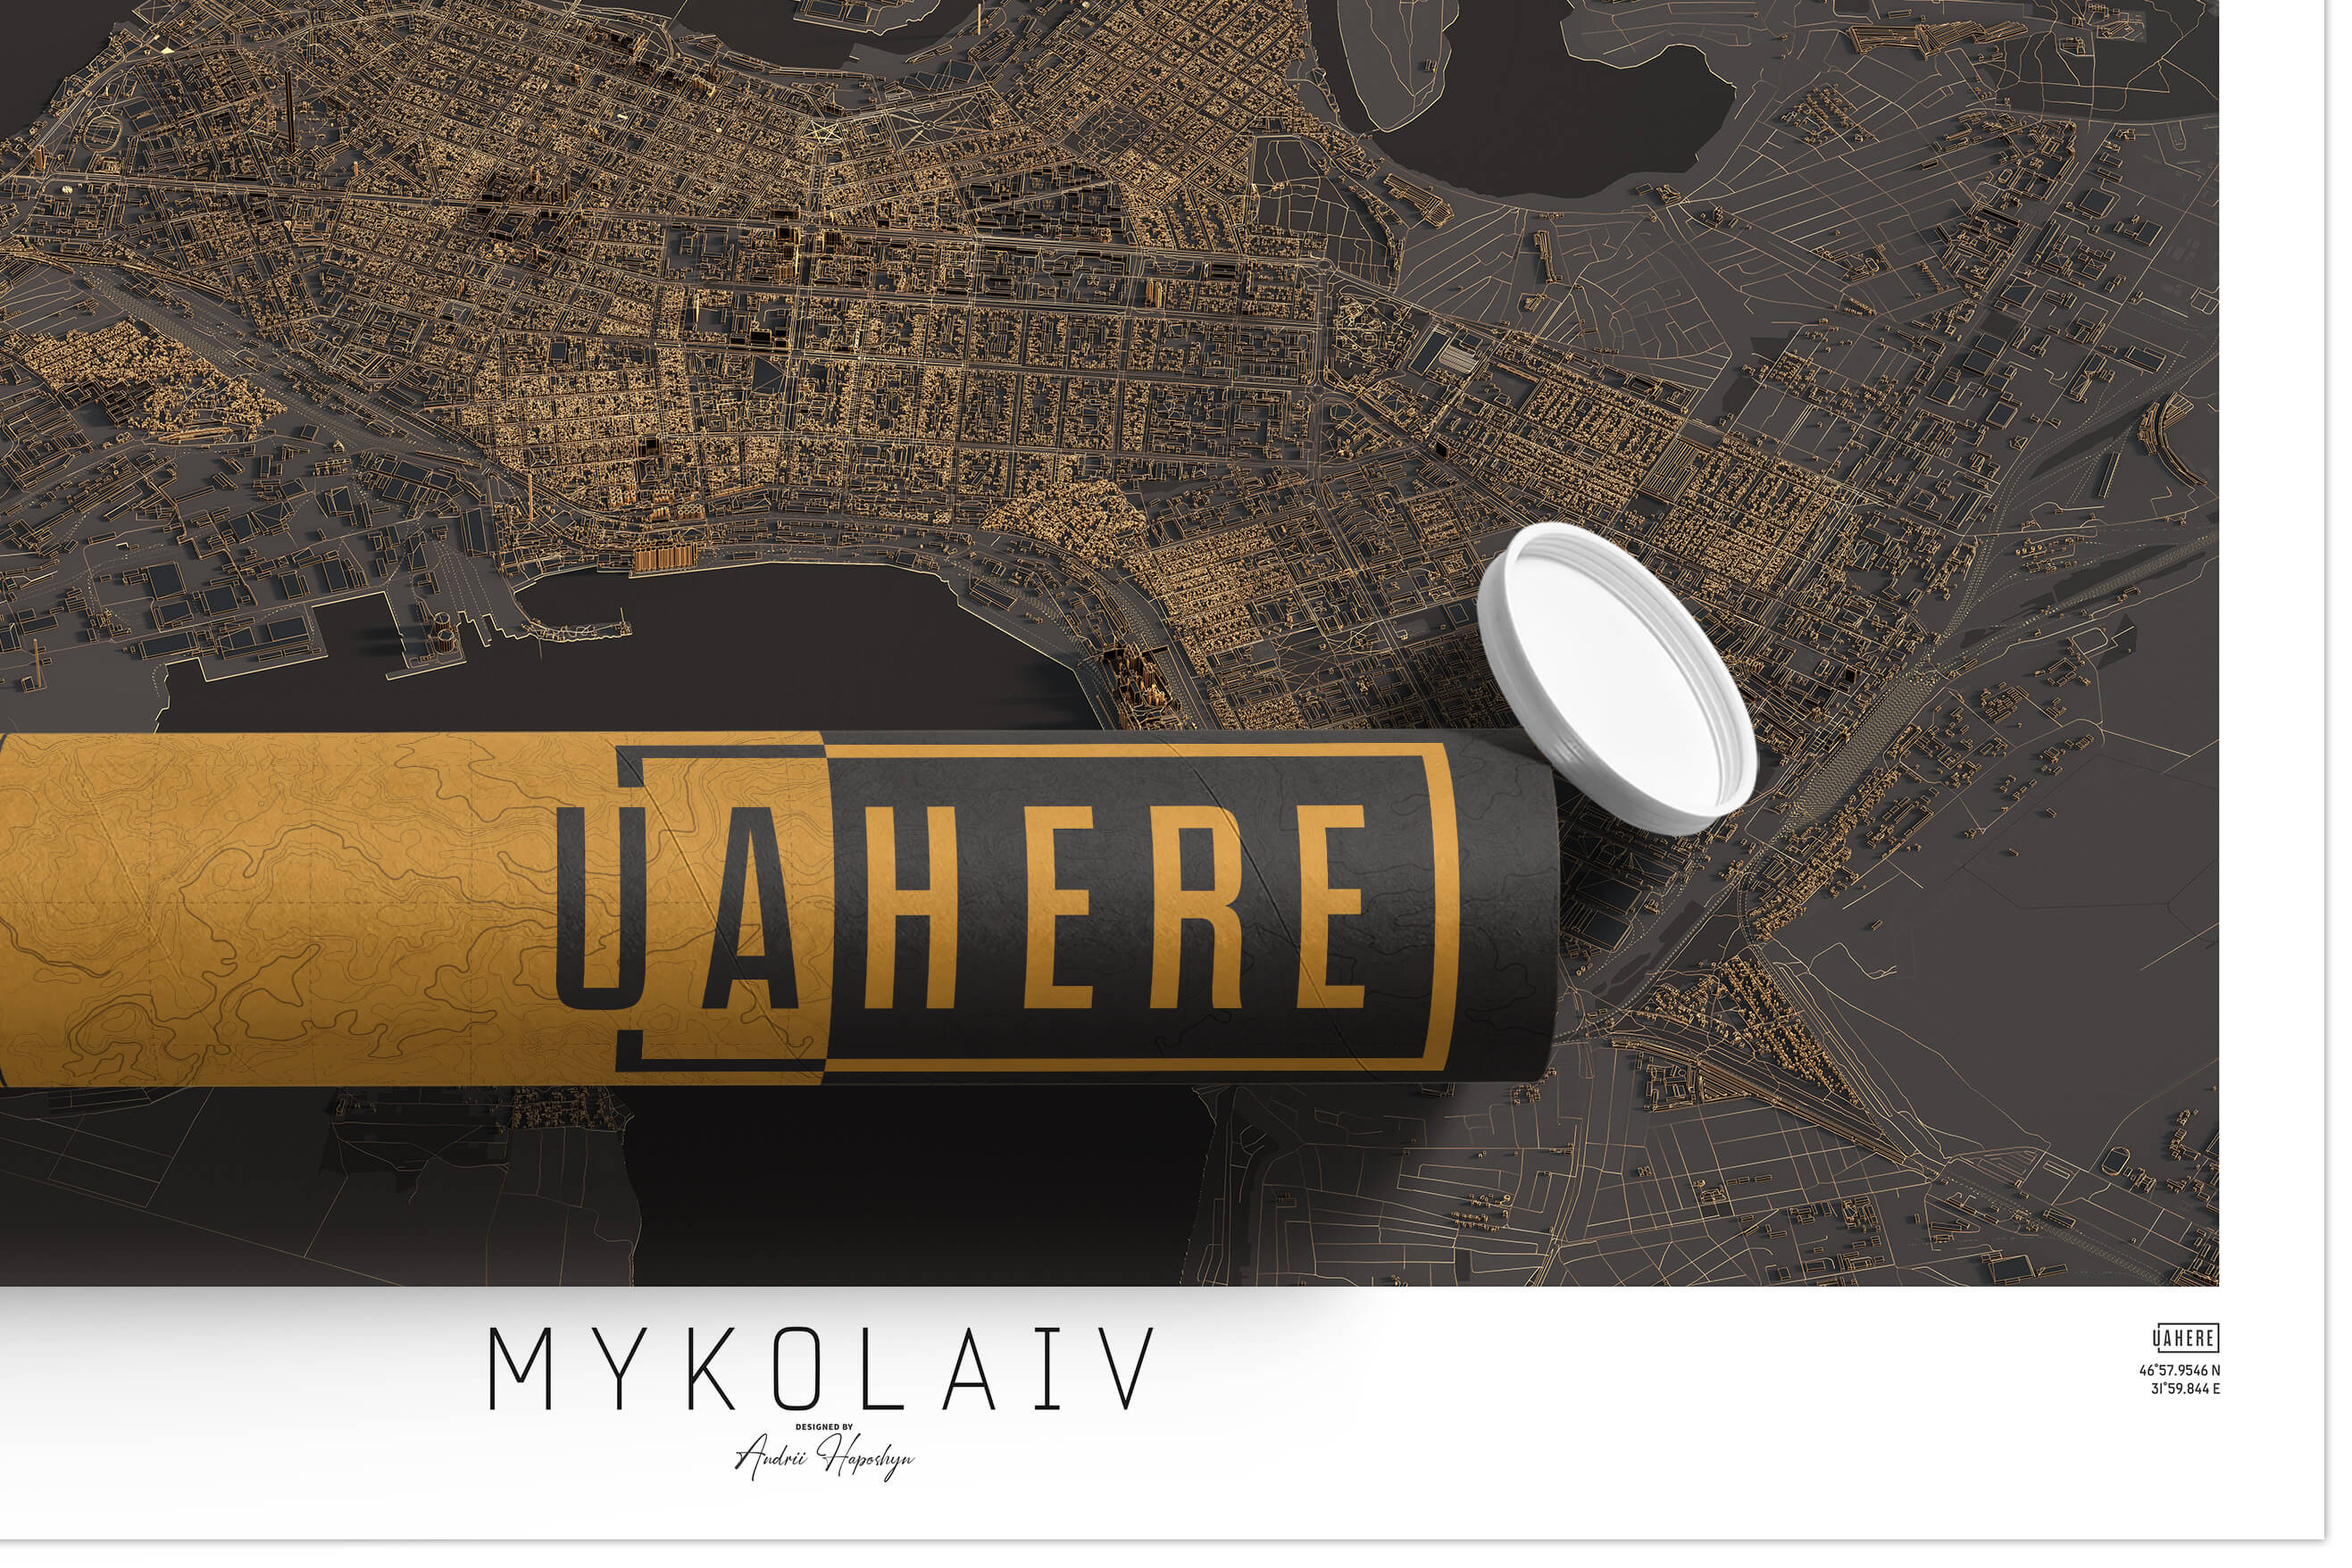 Брендований тубус UAHERE та надрукована стільна темна 3д мапа Миколаєва